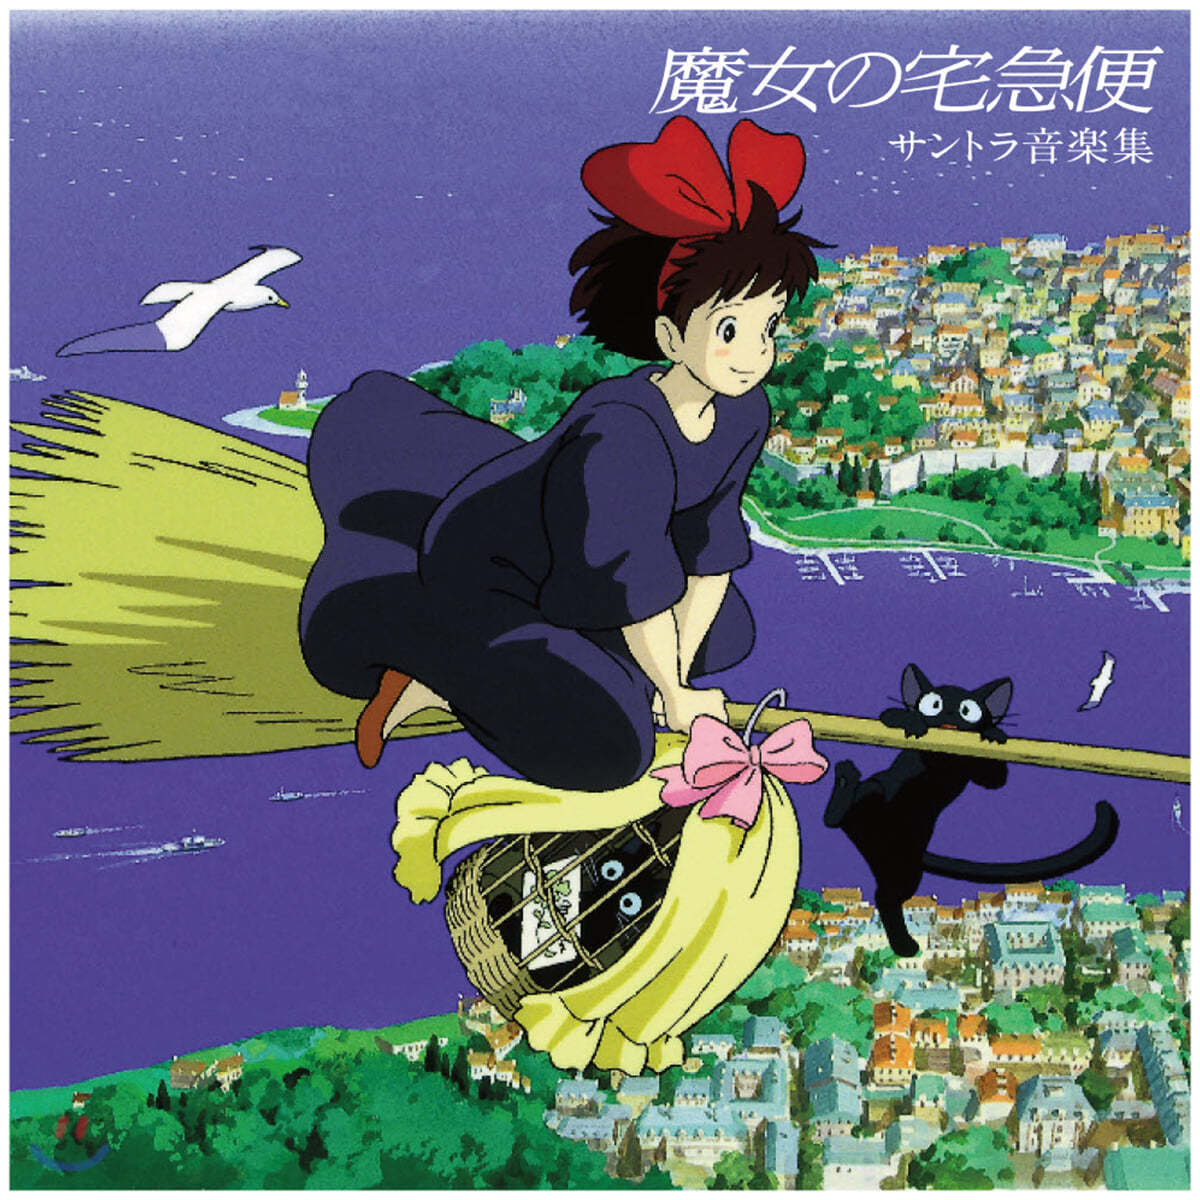 마녀 배달부 키키 사운드트랙 컬렉션 (Kiki's Delivery Service Soundtrack Collection by Joe Hisaishi 히사이시 조) [LP]